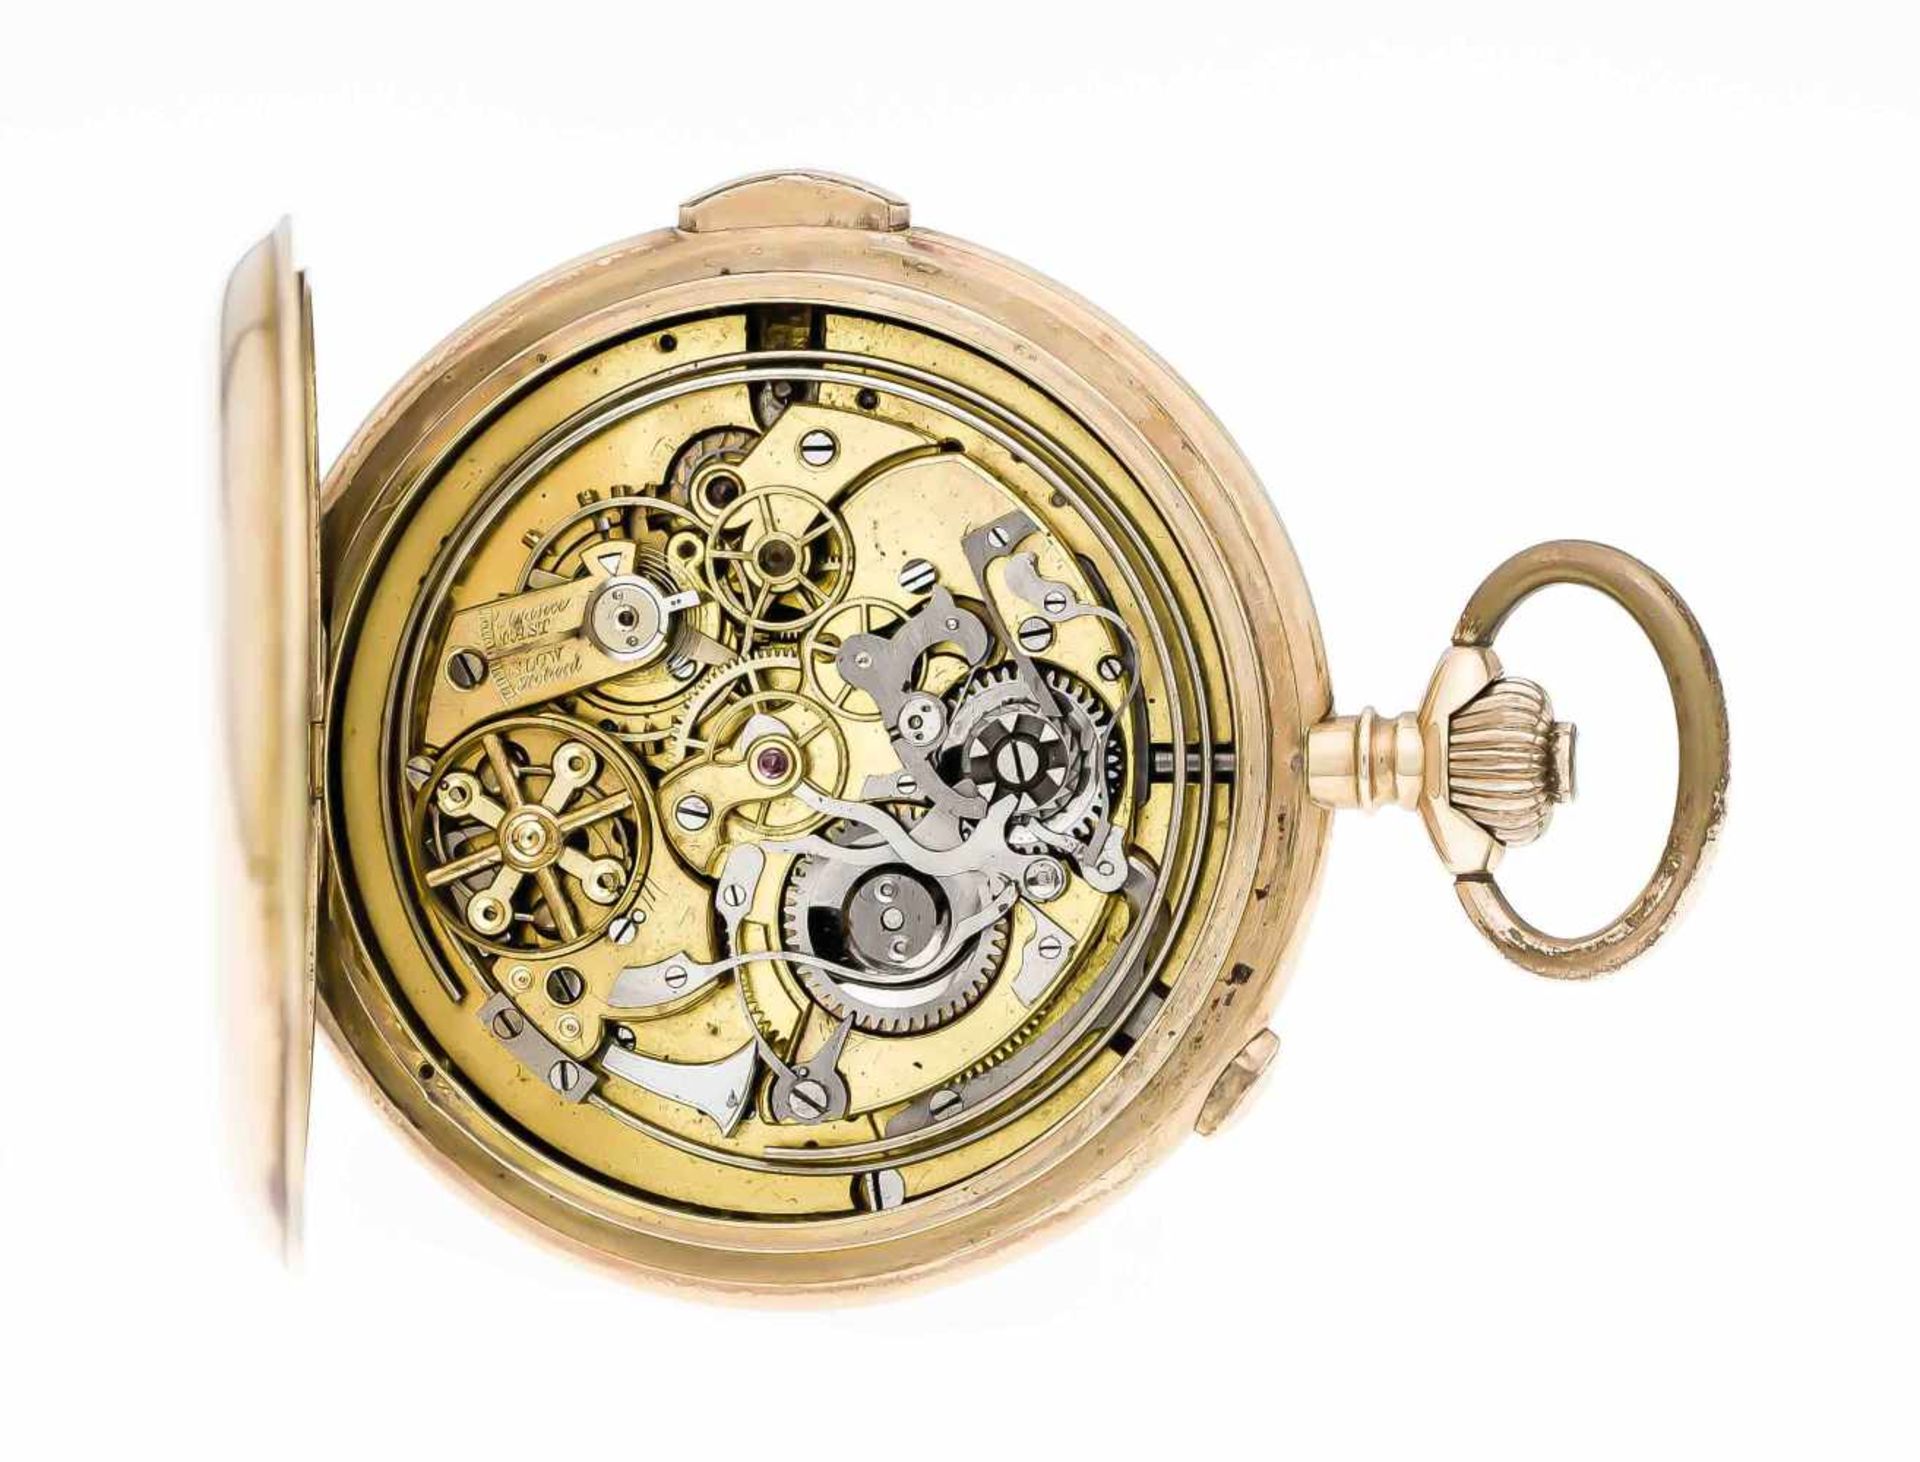 Herrentaschenuhr, GG 585 3 Deckel, 1/4 Std. Repetition und Chronograf, Uhr läuft tadelos,Scharnier - Image 2 of 2